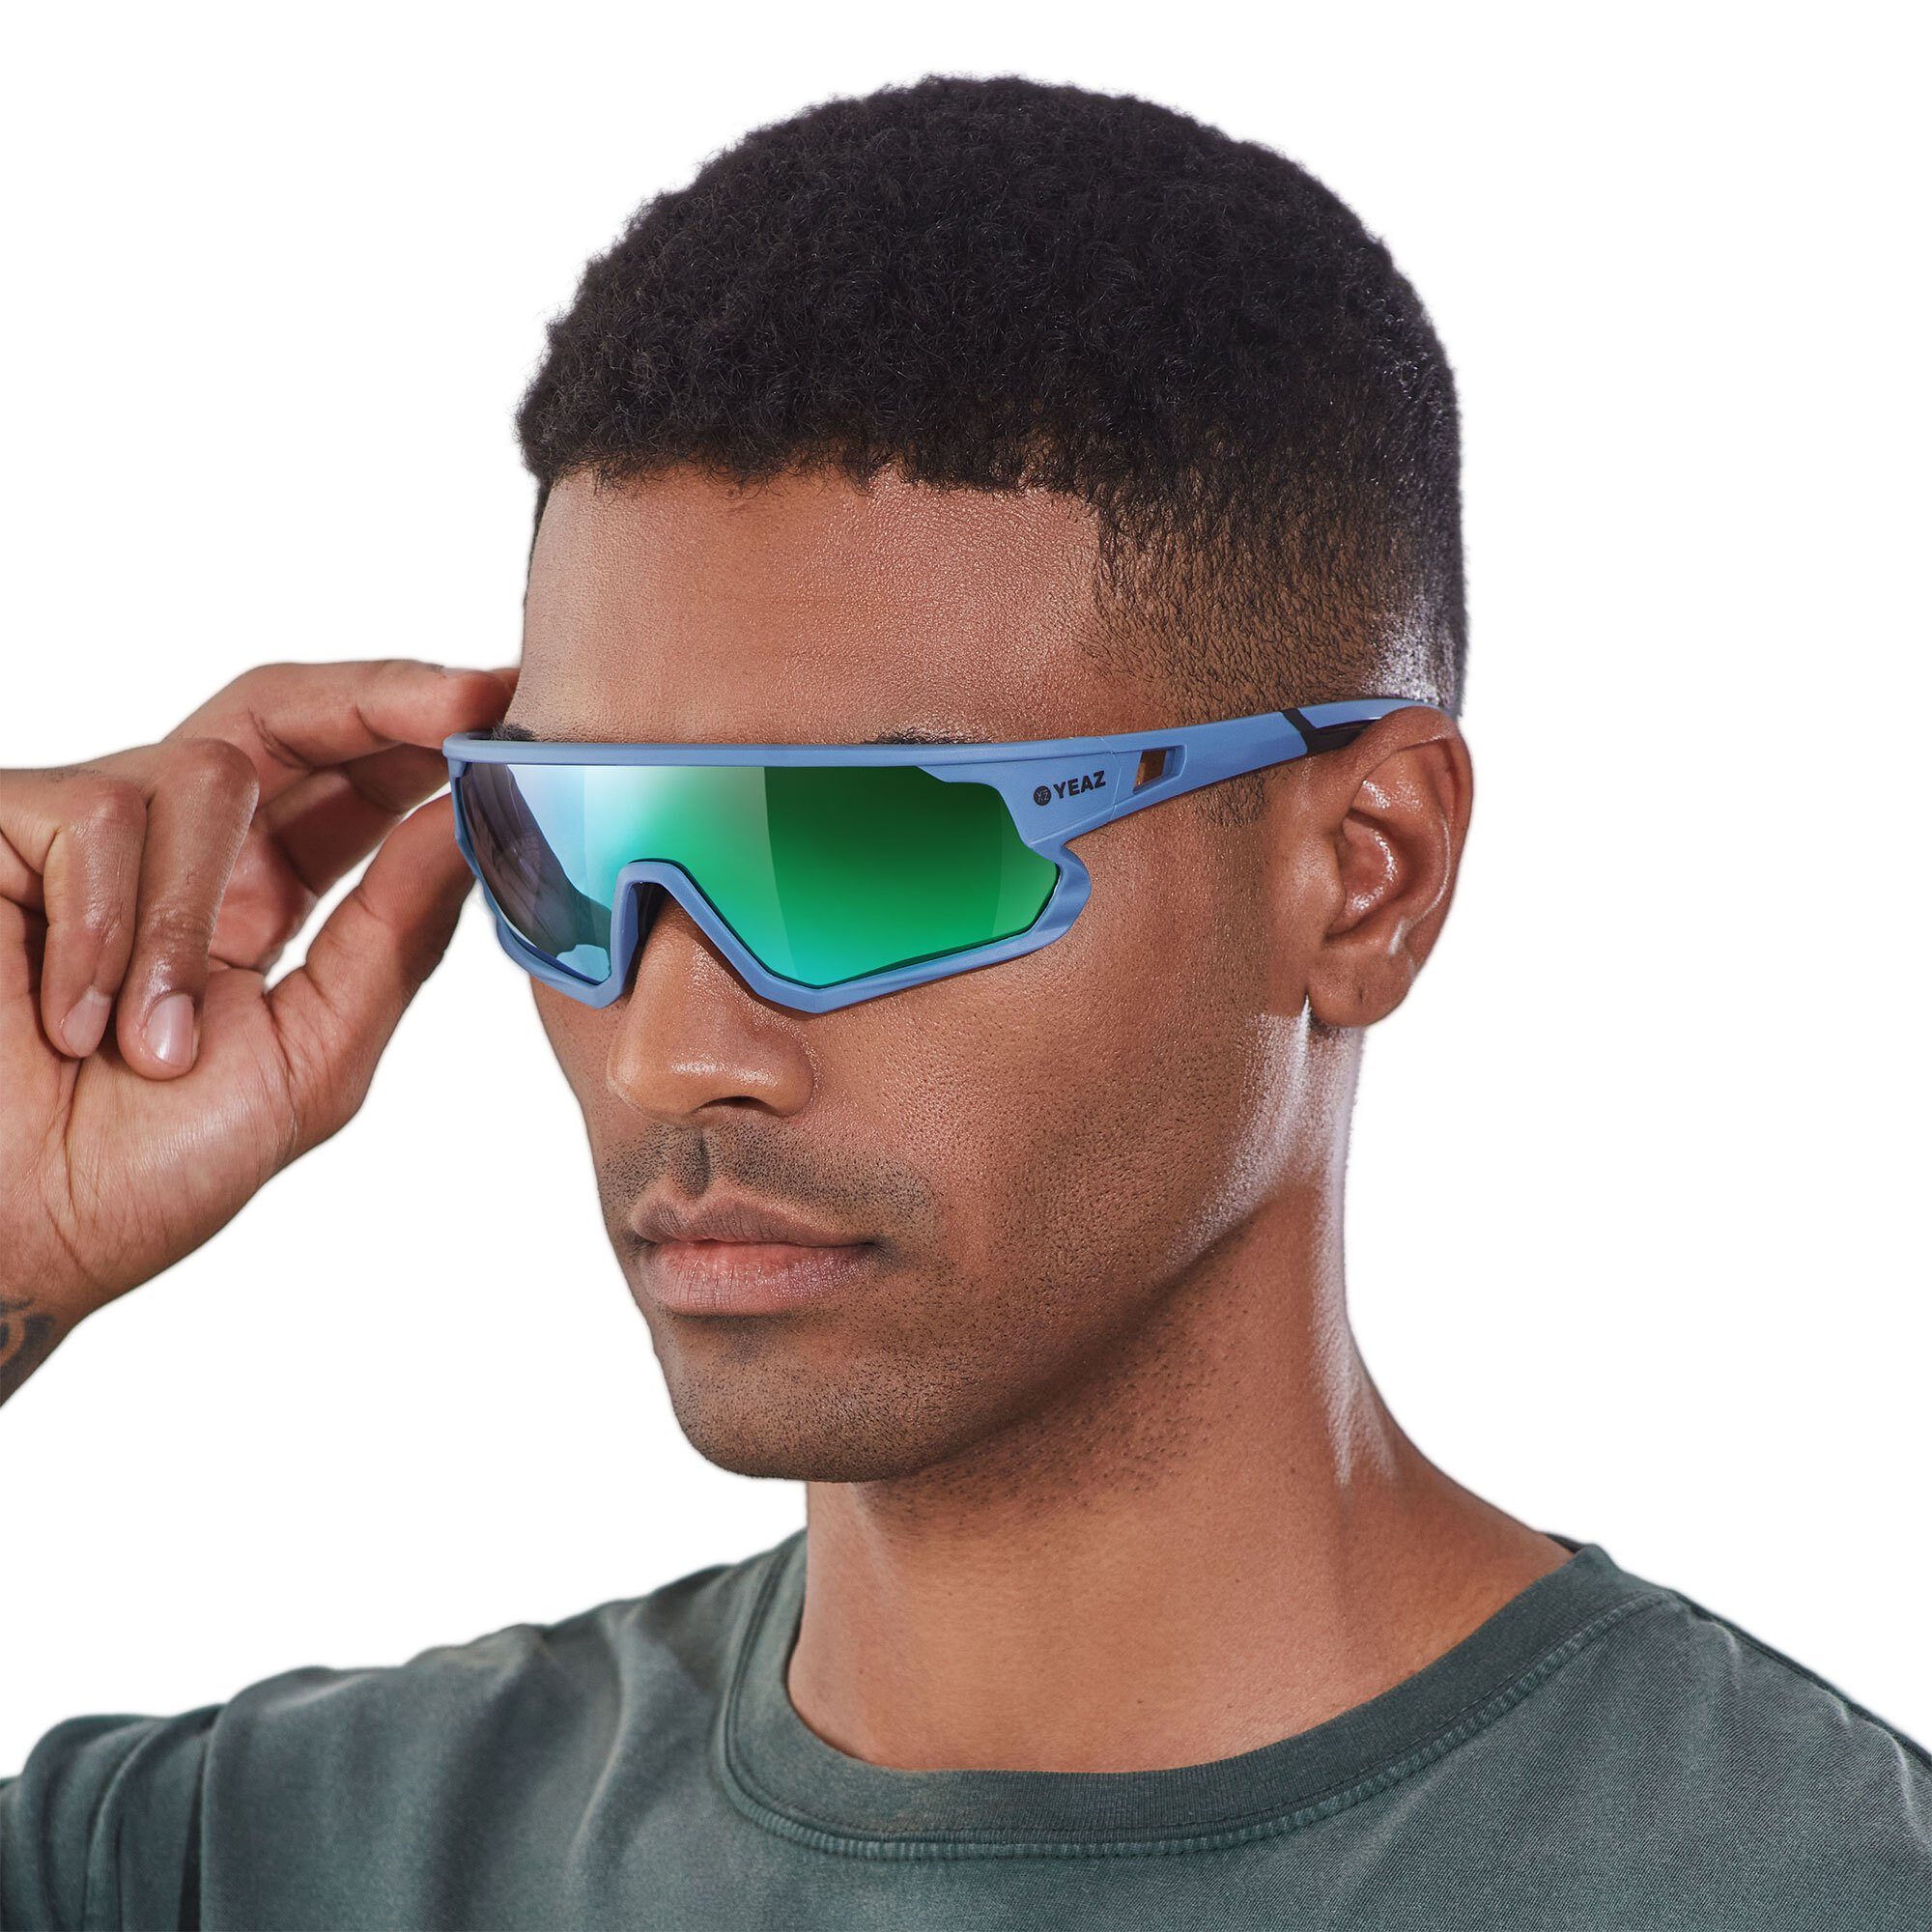 YEAZ Sportbrille SUNRISE sport-sonnenbrille cyan blue/green, Guter Schutz bei optimierter Sicht